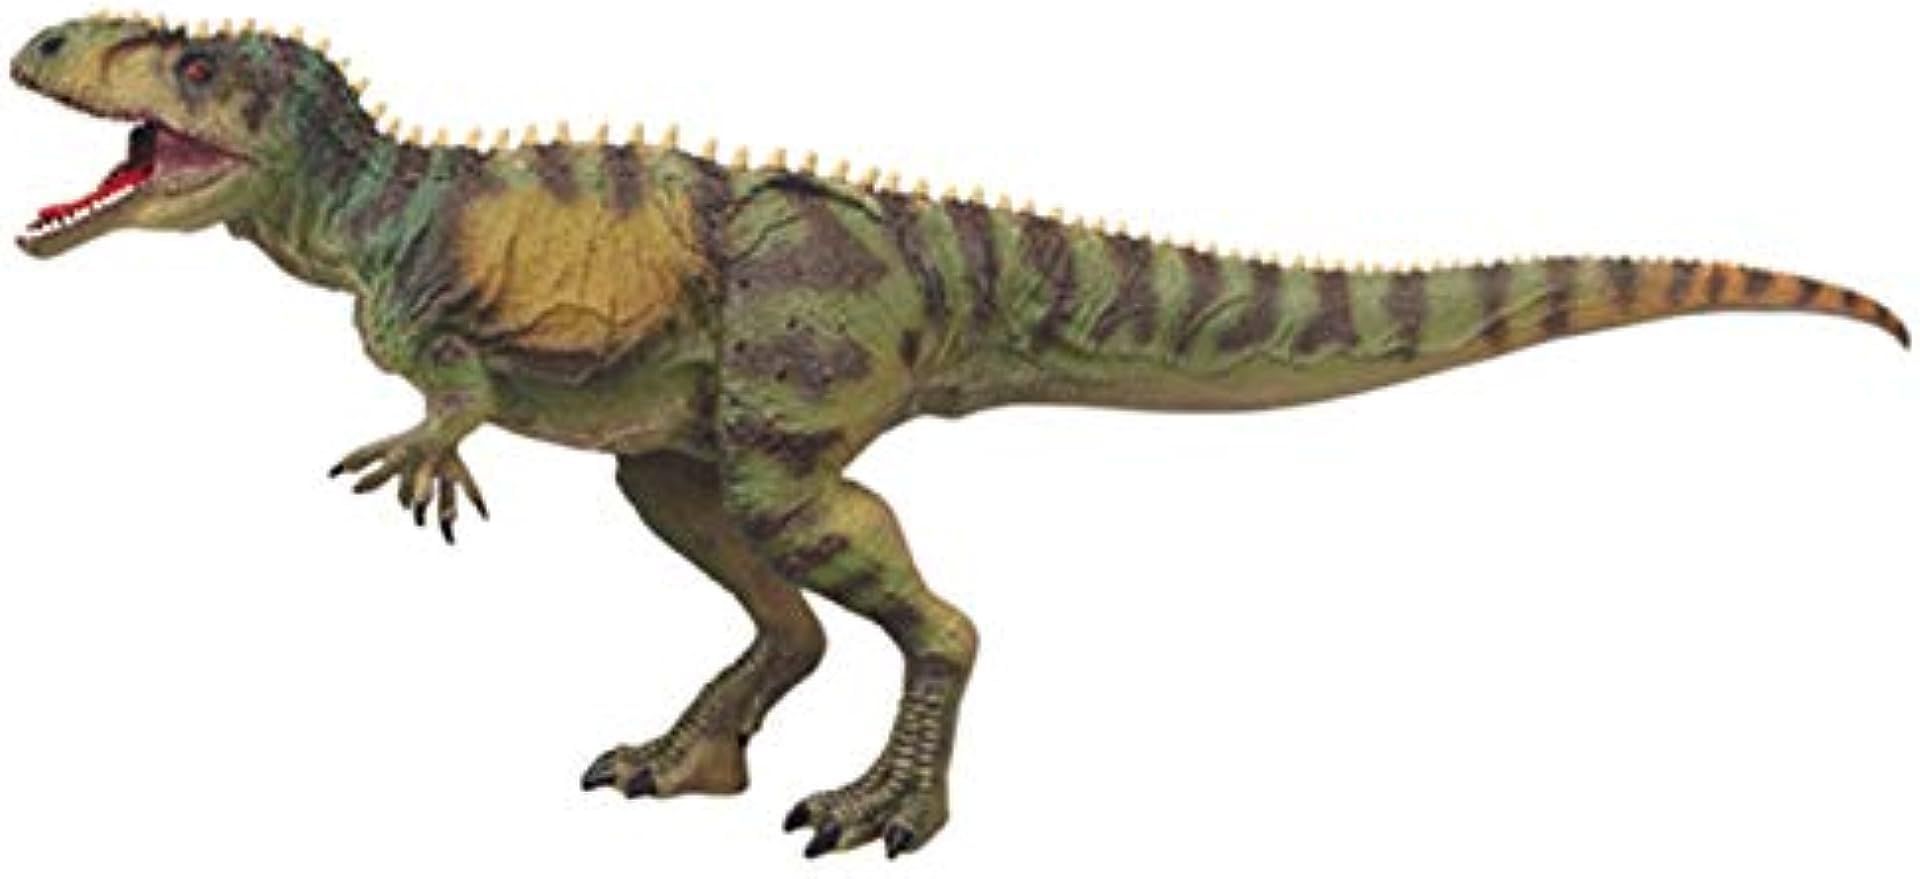 ギガノトサウルス 恐竜 大型 肉食 獣脚類 動物 リアル フィギュア PVC プラモデル おもちゃ 模型 恐竜好き 誕生日 プレゼント オリジナル 塗装済 完成品 45cm級 2色 (グリーン)